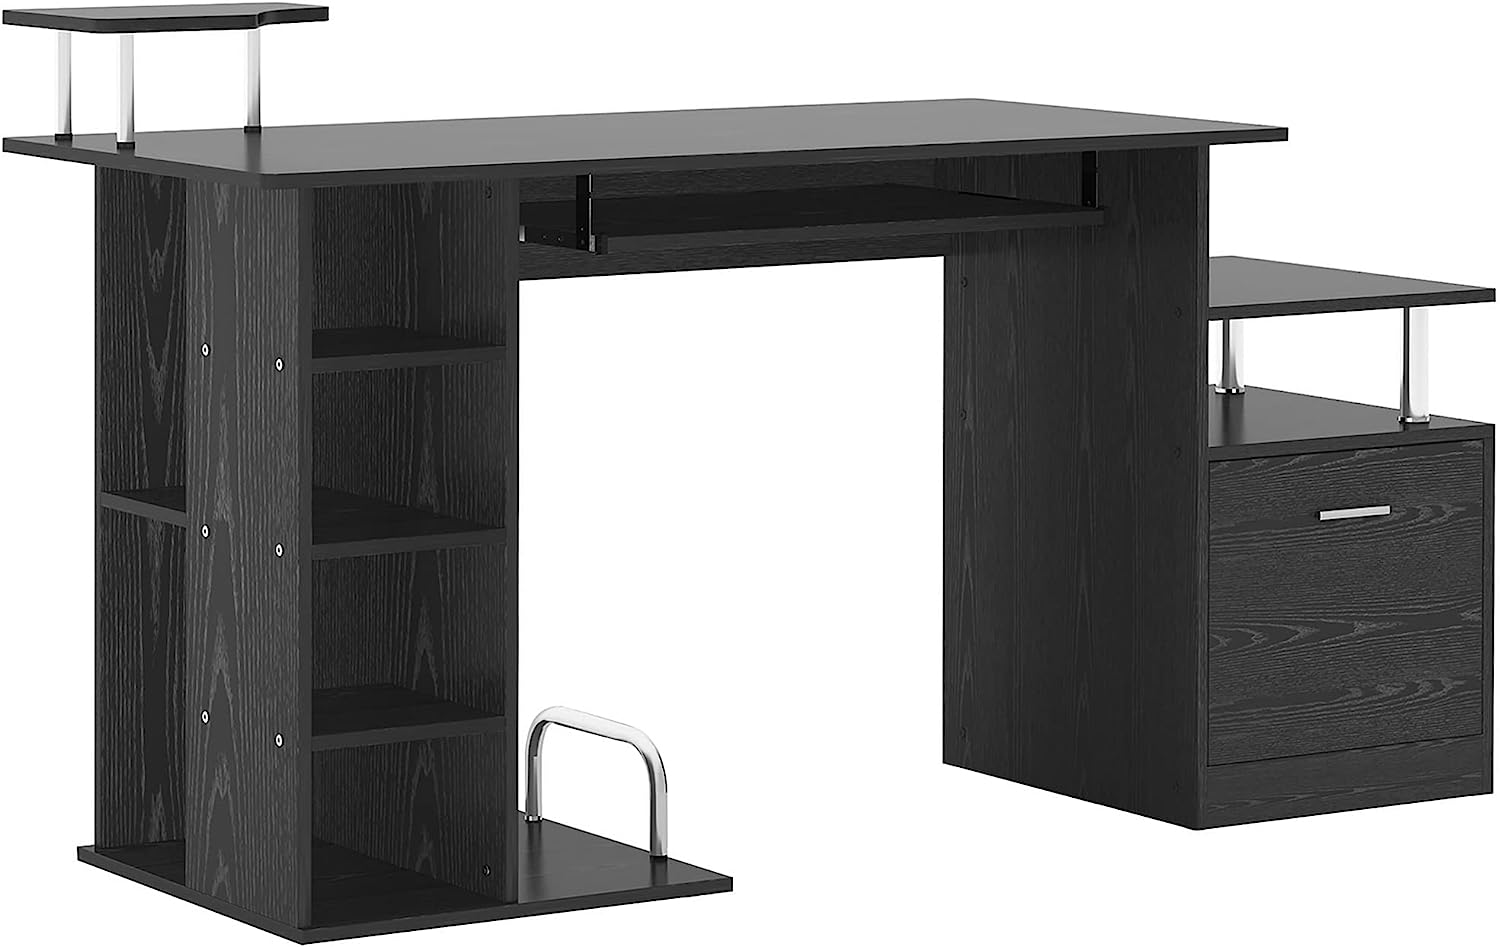 ProperAV Computer Desk Workstation Wood Laptop Table with Drawer Shelves - Black